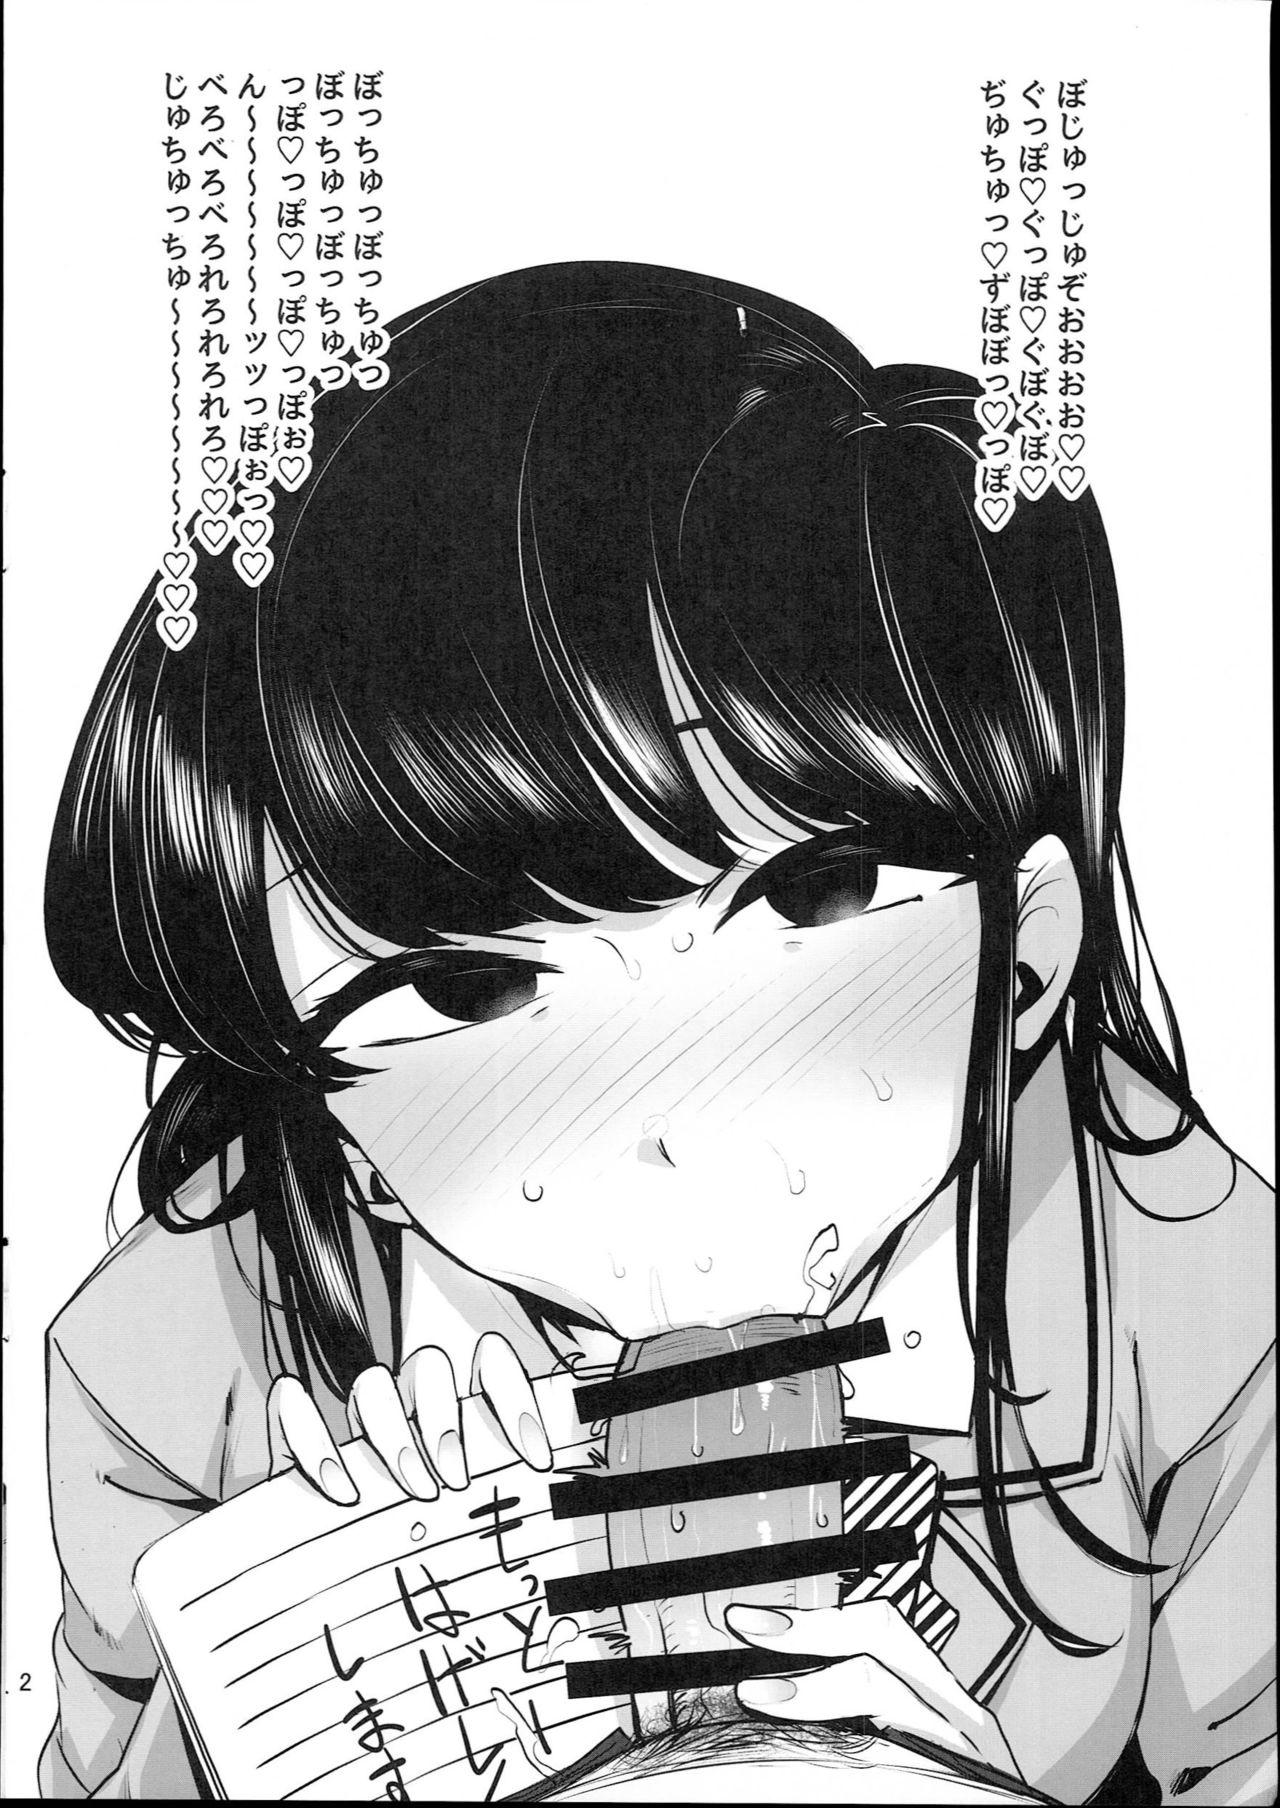 Buttfucking Rakugaita 8 - Komi-san wa komyushou desu. Affair - Page 4